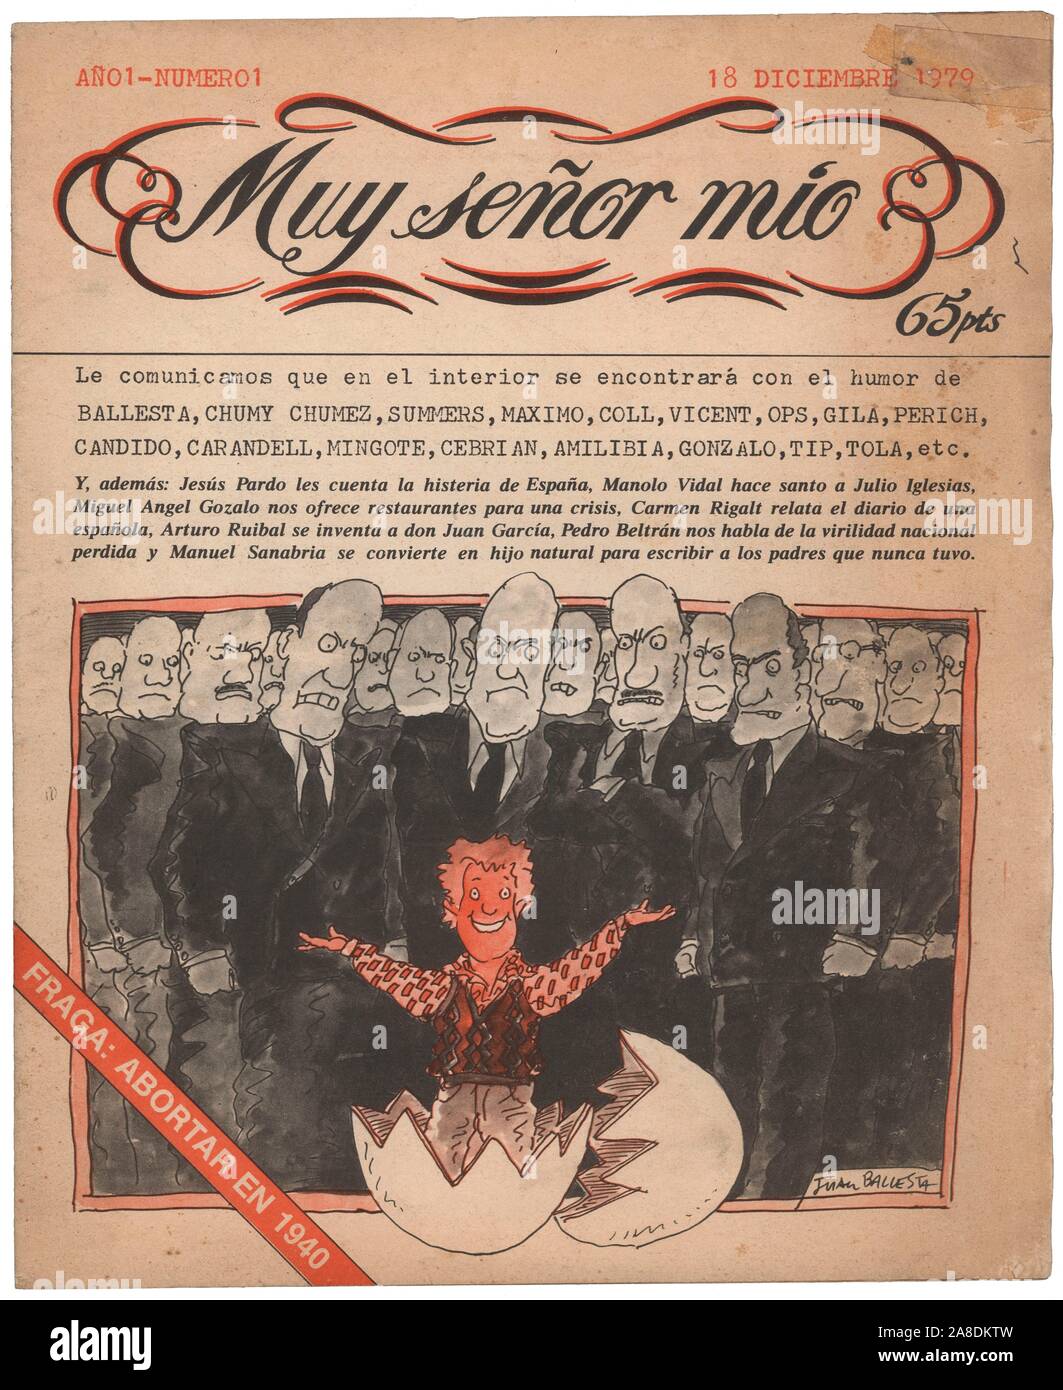 Portada de la revista Muy señor mío, número uno, editada en Madrid, diciembre de 1979. Stock Photo